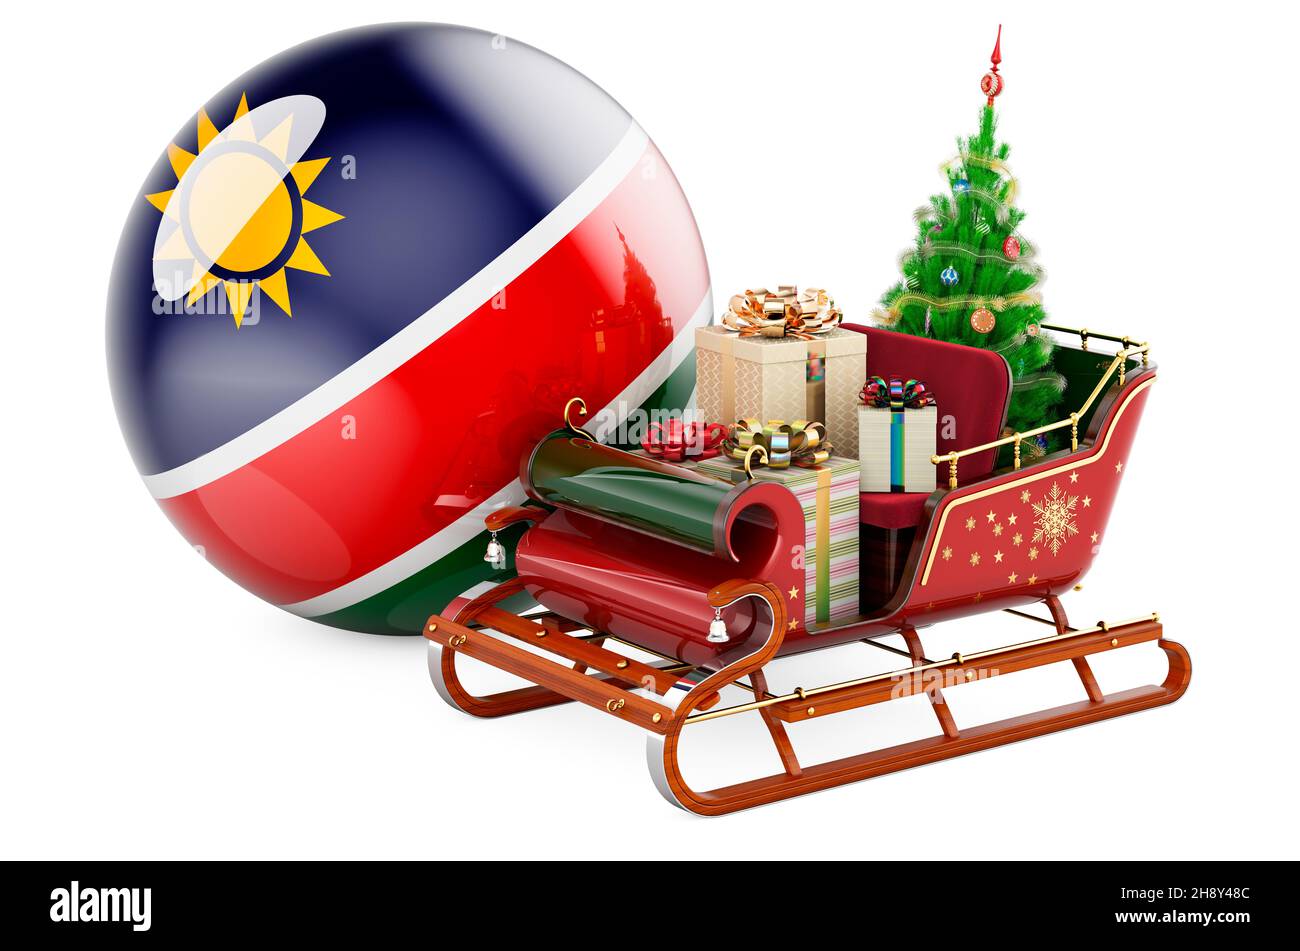 Weihnachten in Namibia, Konzept. Weihnachtsmann Schlitten voller Geschenke  mit namibischer Flagge. 3D Darstellung isoliert auf weißem Hintergrund  Stockfotografie - Alamy